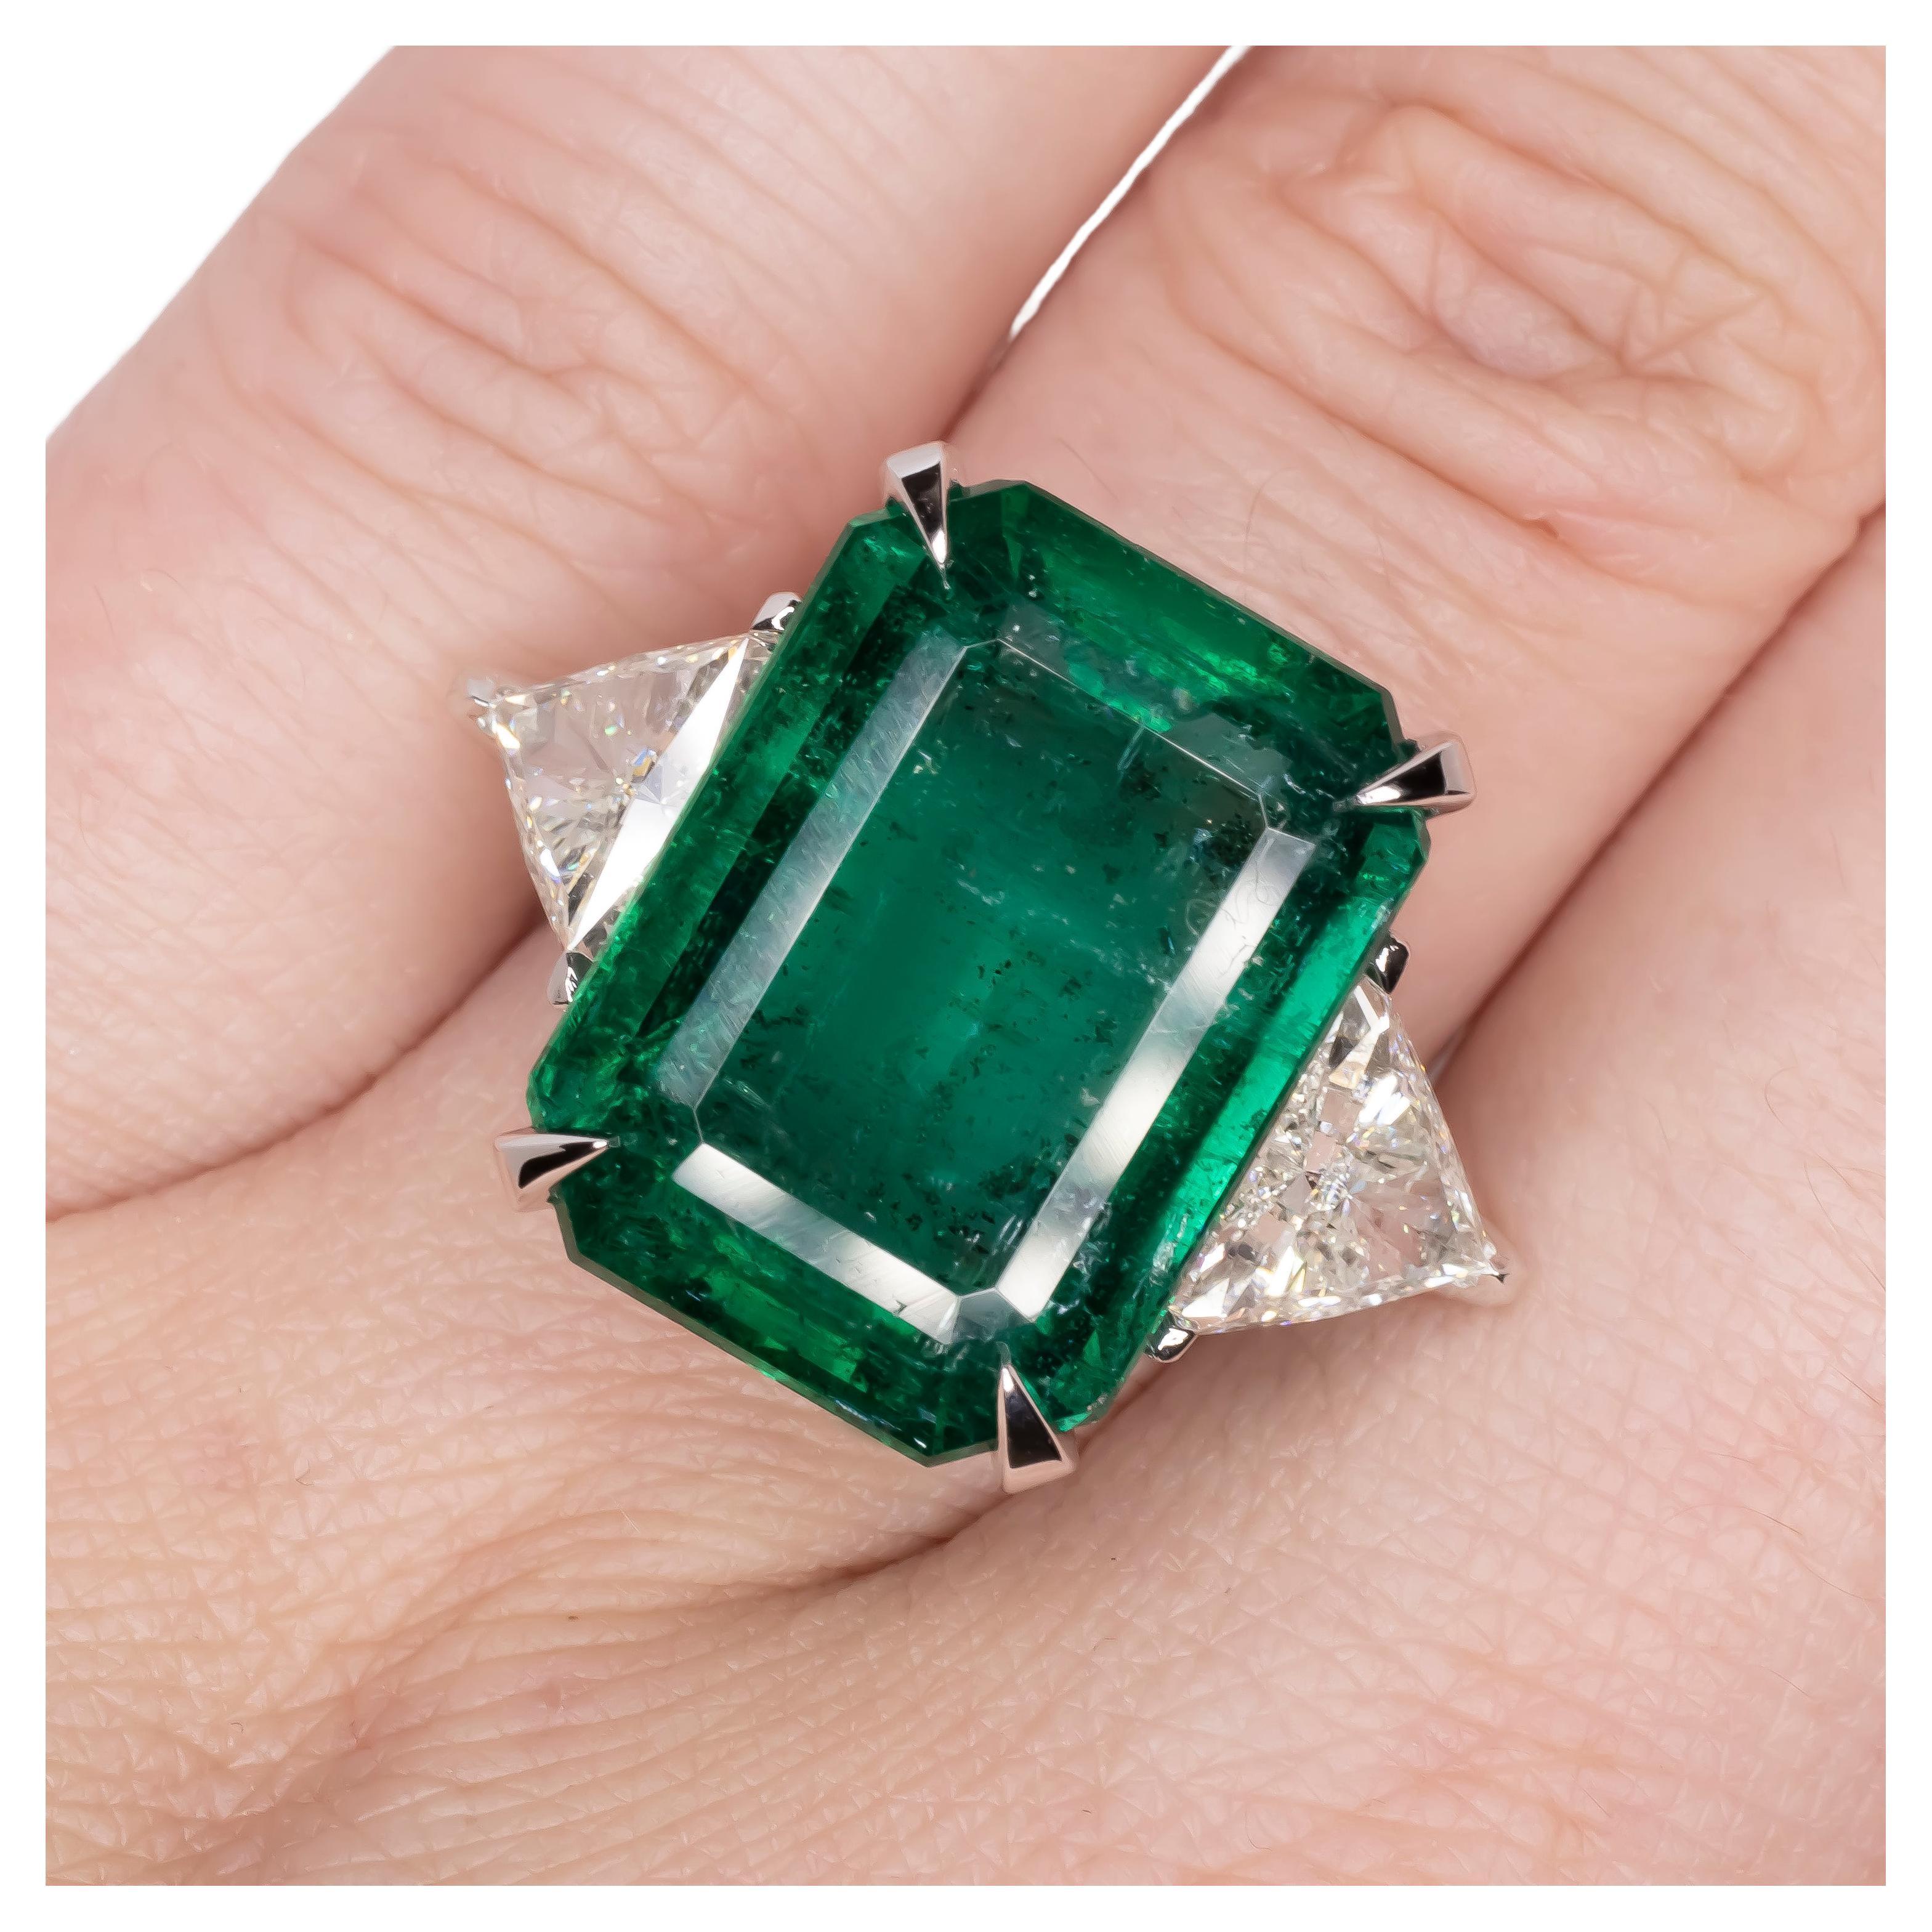 Wir präsentieren einen außergewöhnlichen, vom GIA zertifizierten Ring mit 16,93 Karat Smaragd und Diamanten, ein wahres Zeugnis für die Pracht edler Schmuckstücke. Im Mittelpunkt dieses Rings steht ein prächtiger grüner Smaragd mit einer kleinen